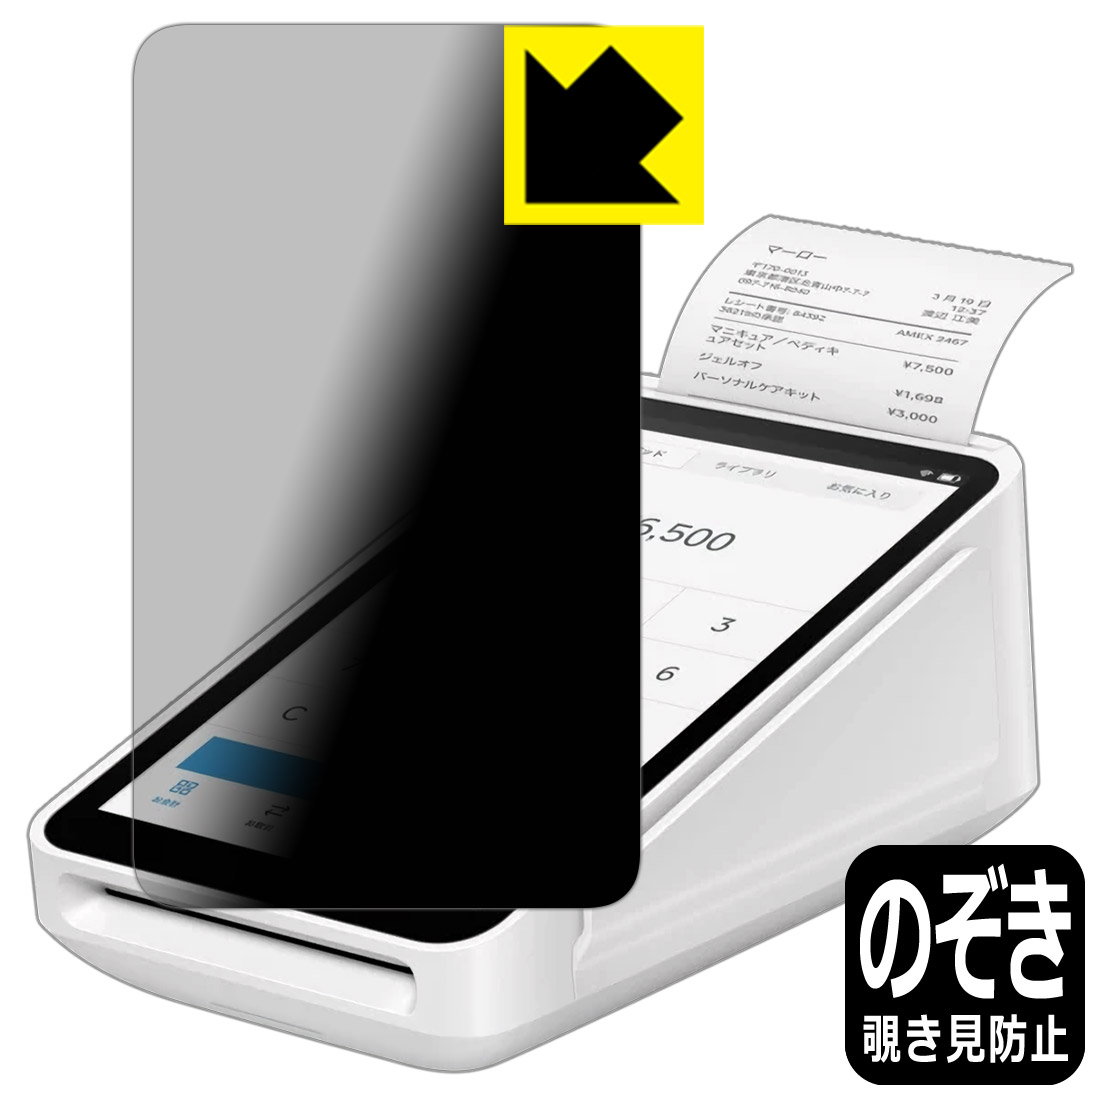 ペーパーライク保護フィルム FUJITSU Handheld Terminal 日本製 自社製造直販 Patio600